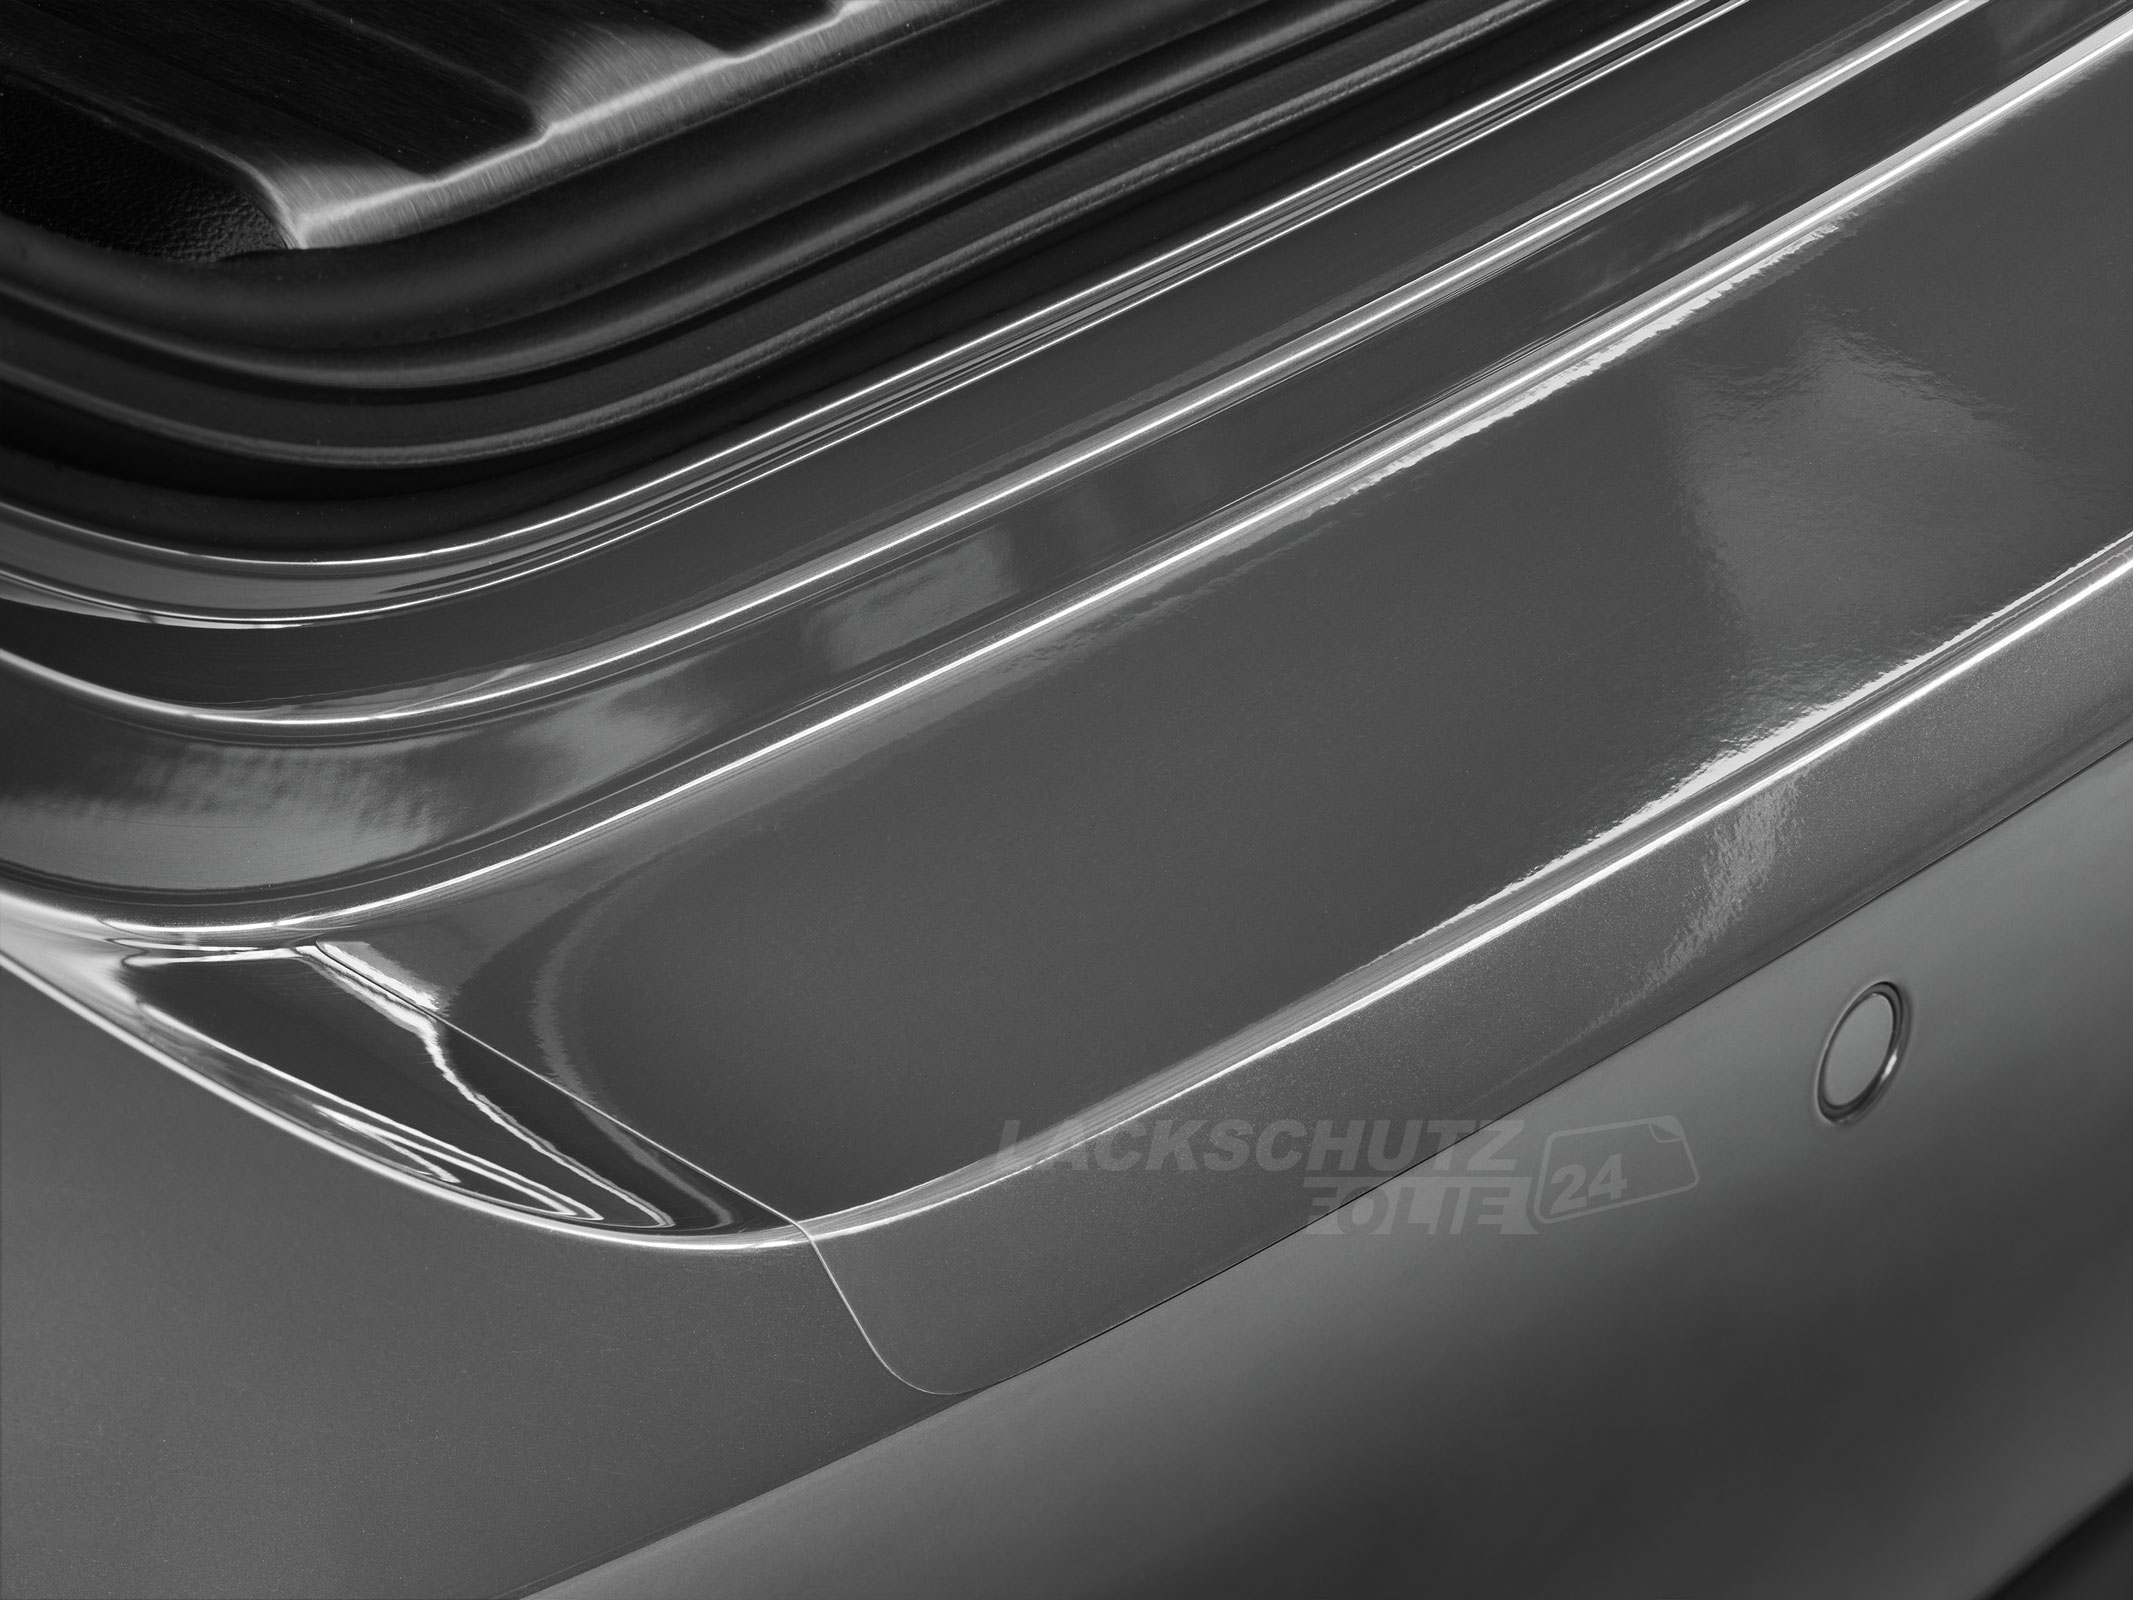 Ladekantenschutzfolie - Transparent Glatt Hochglänzend 150 µm stark für Skoda Superb Limousine (II) Typ 3T, BJ 2008-2015